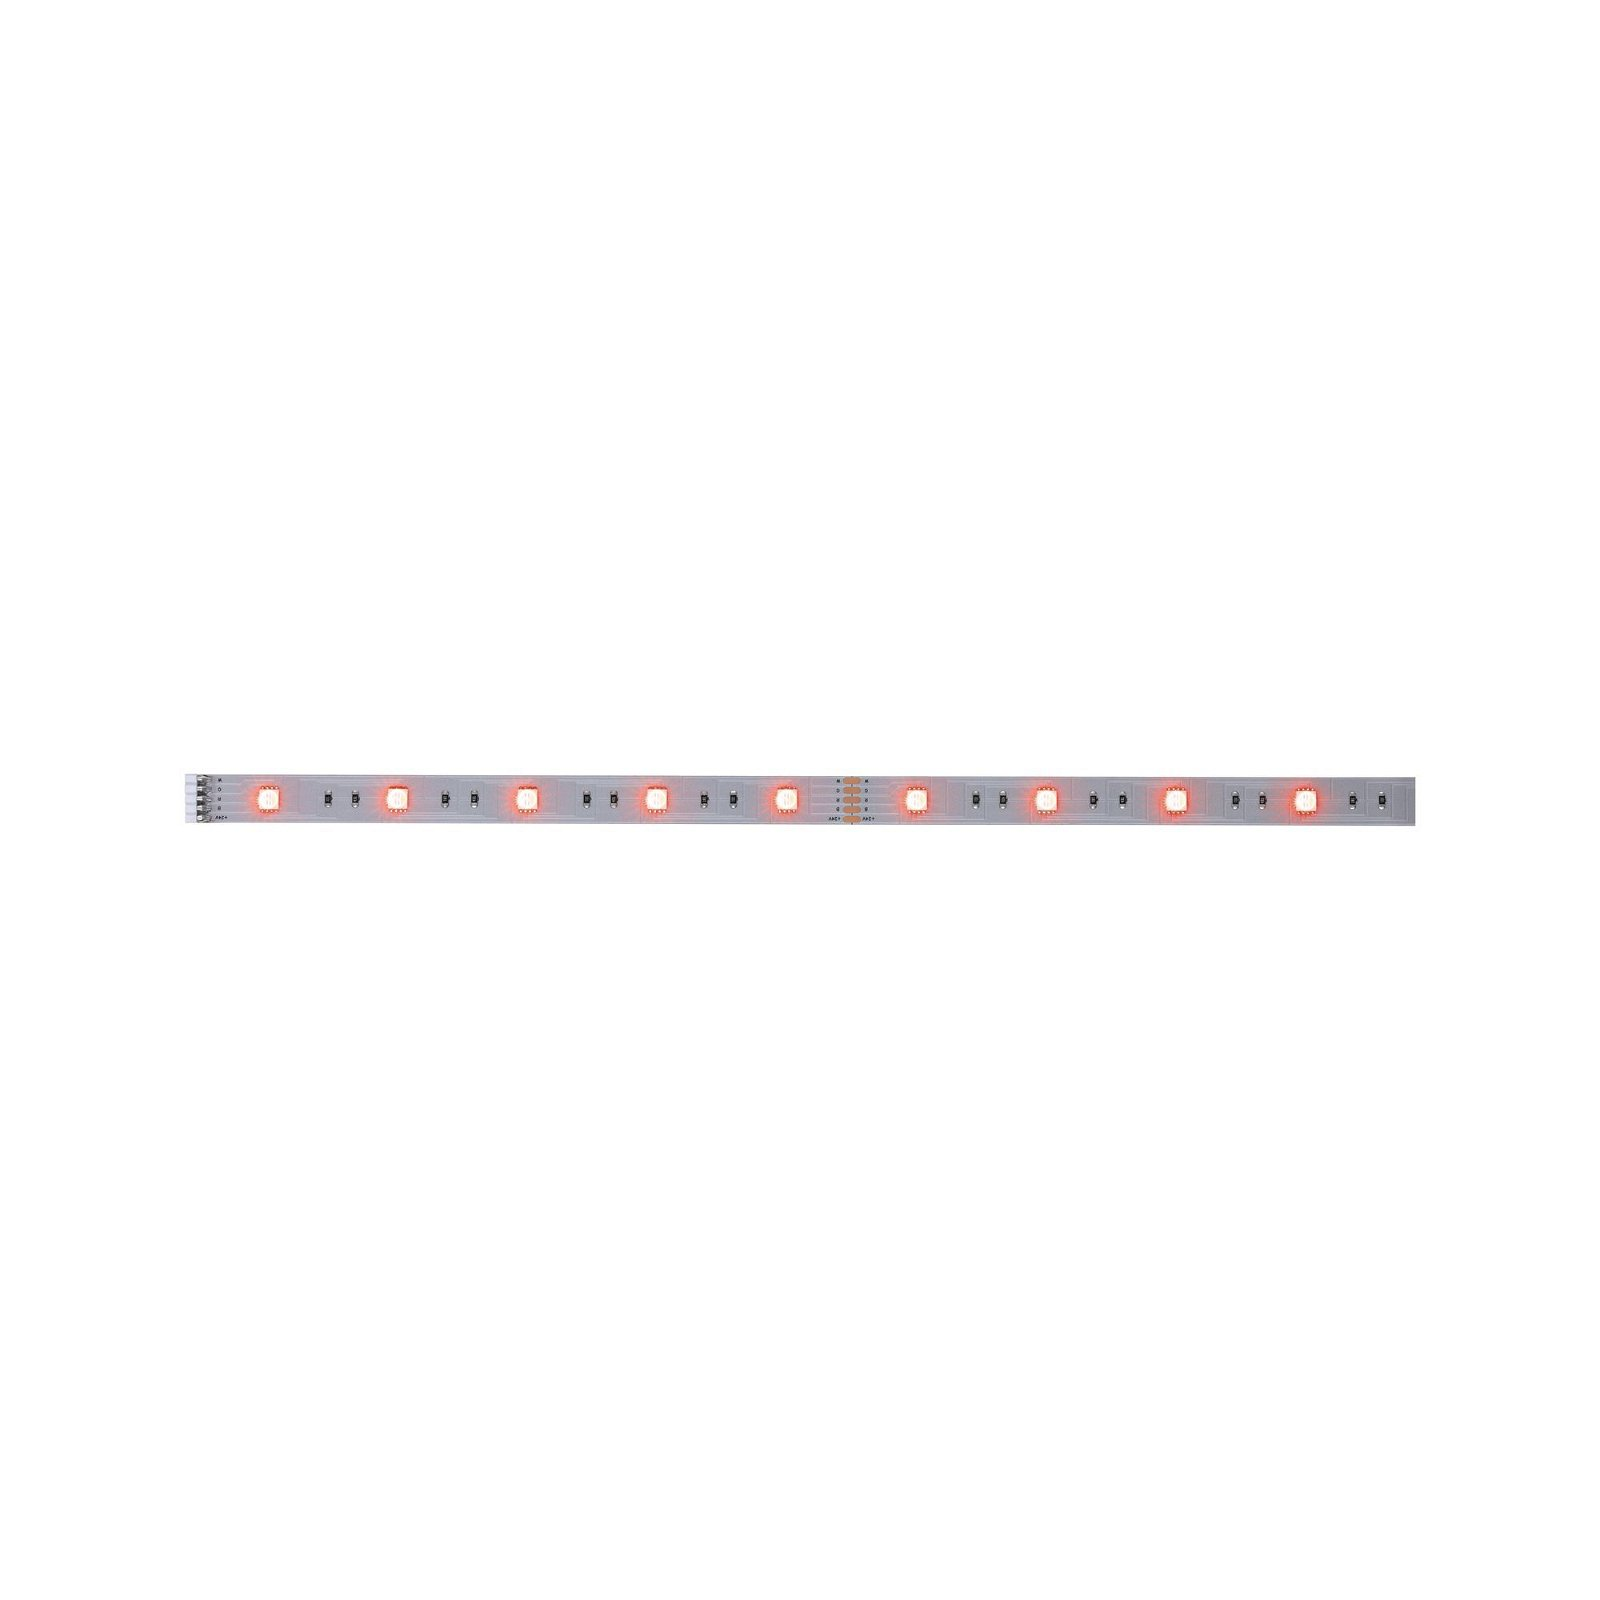 PAULMANN LICHT MaxLED 250 (79865) White LED Farbwechsel Strips RGBW|Tunable